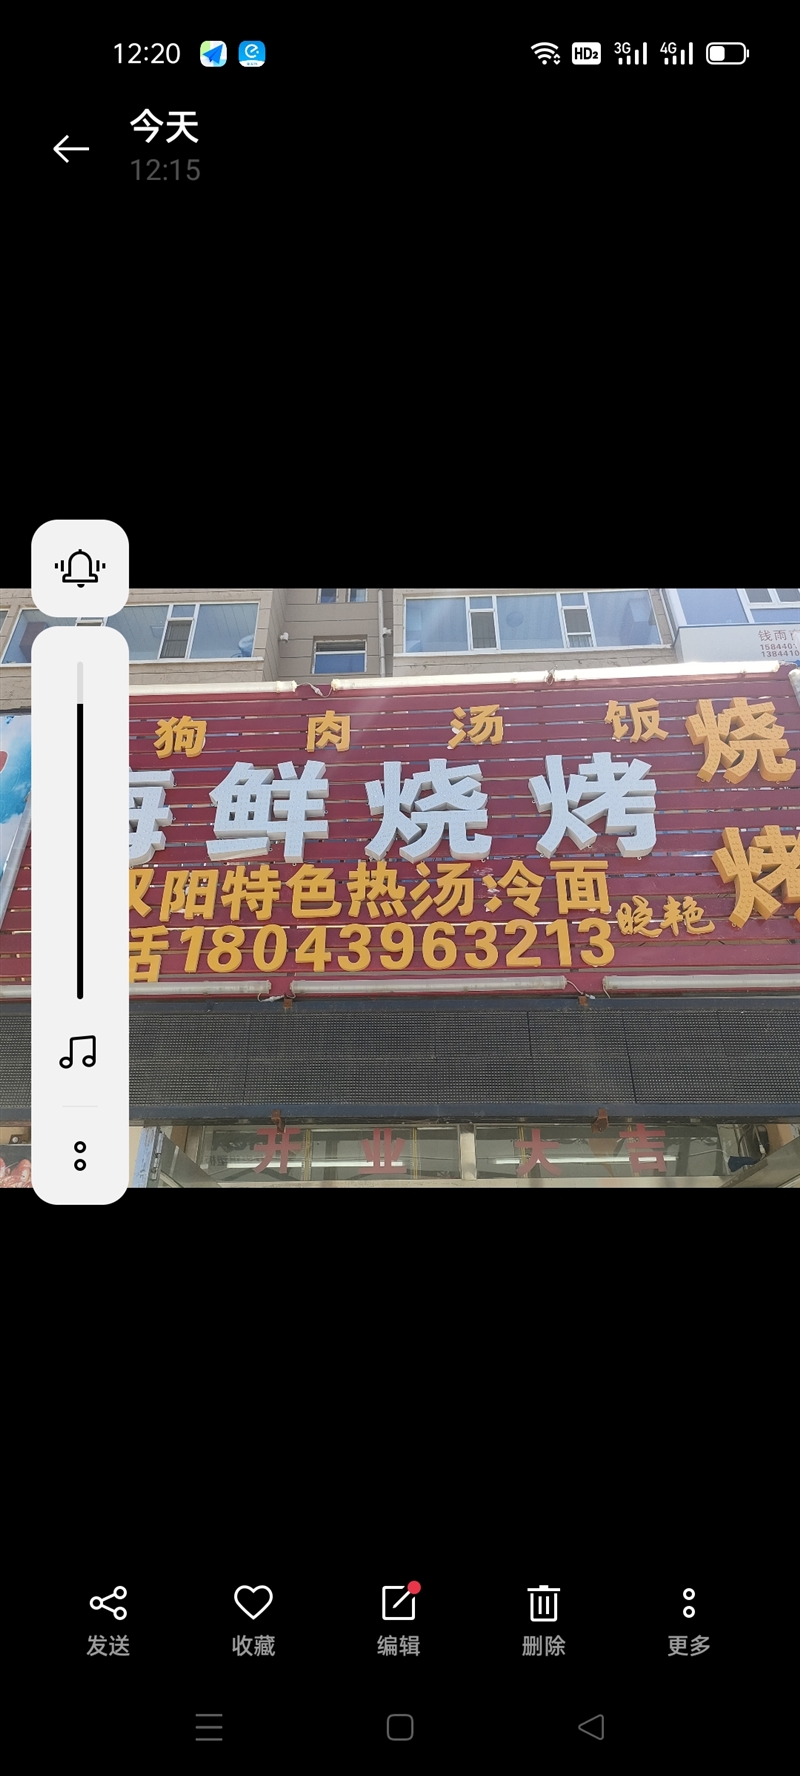 晓艳狗肉汤饭海鲜烧烤店